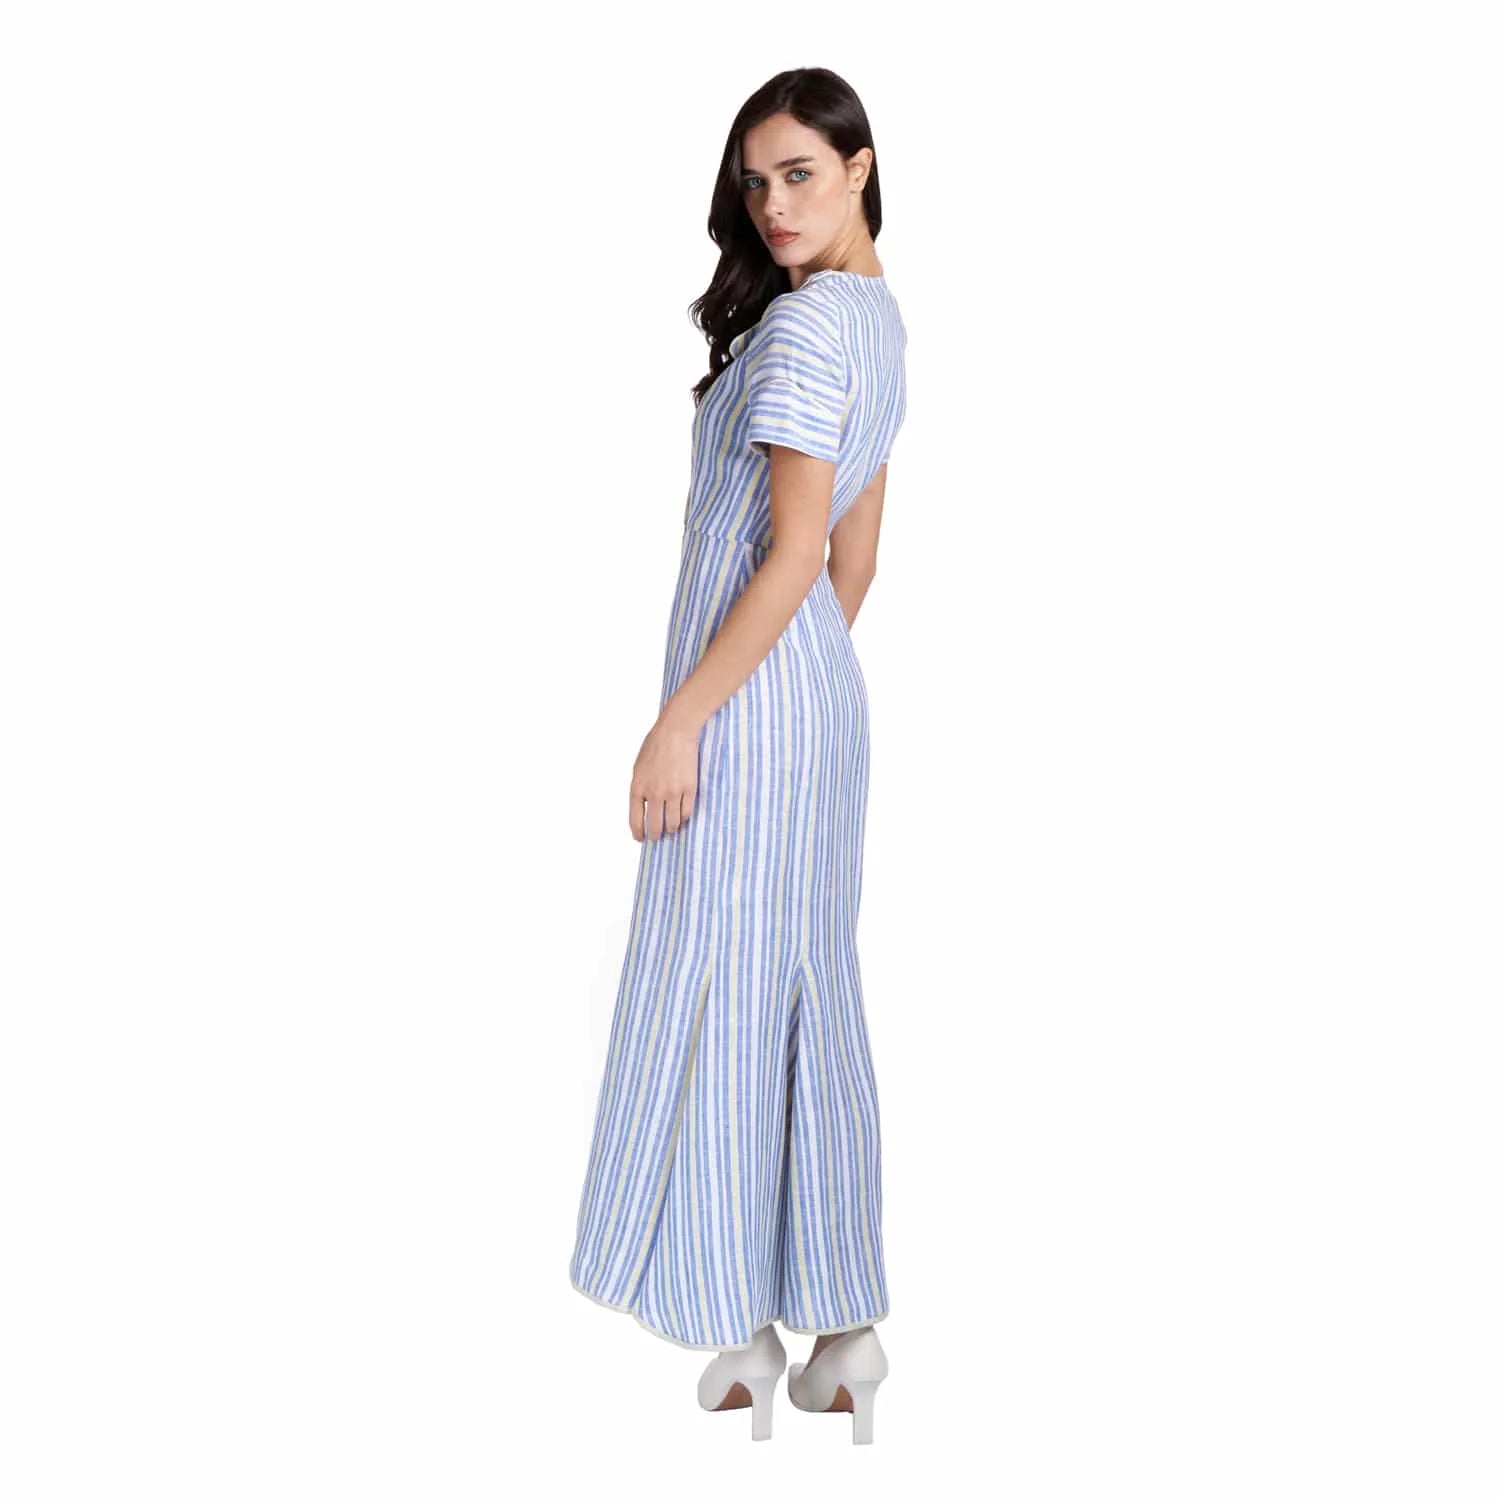 Striped linen dress - Dress